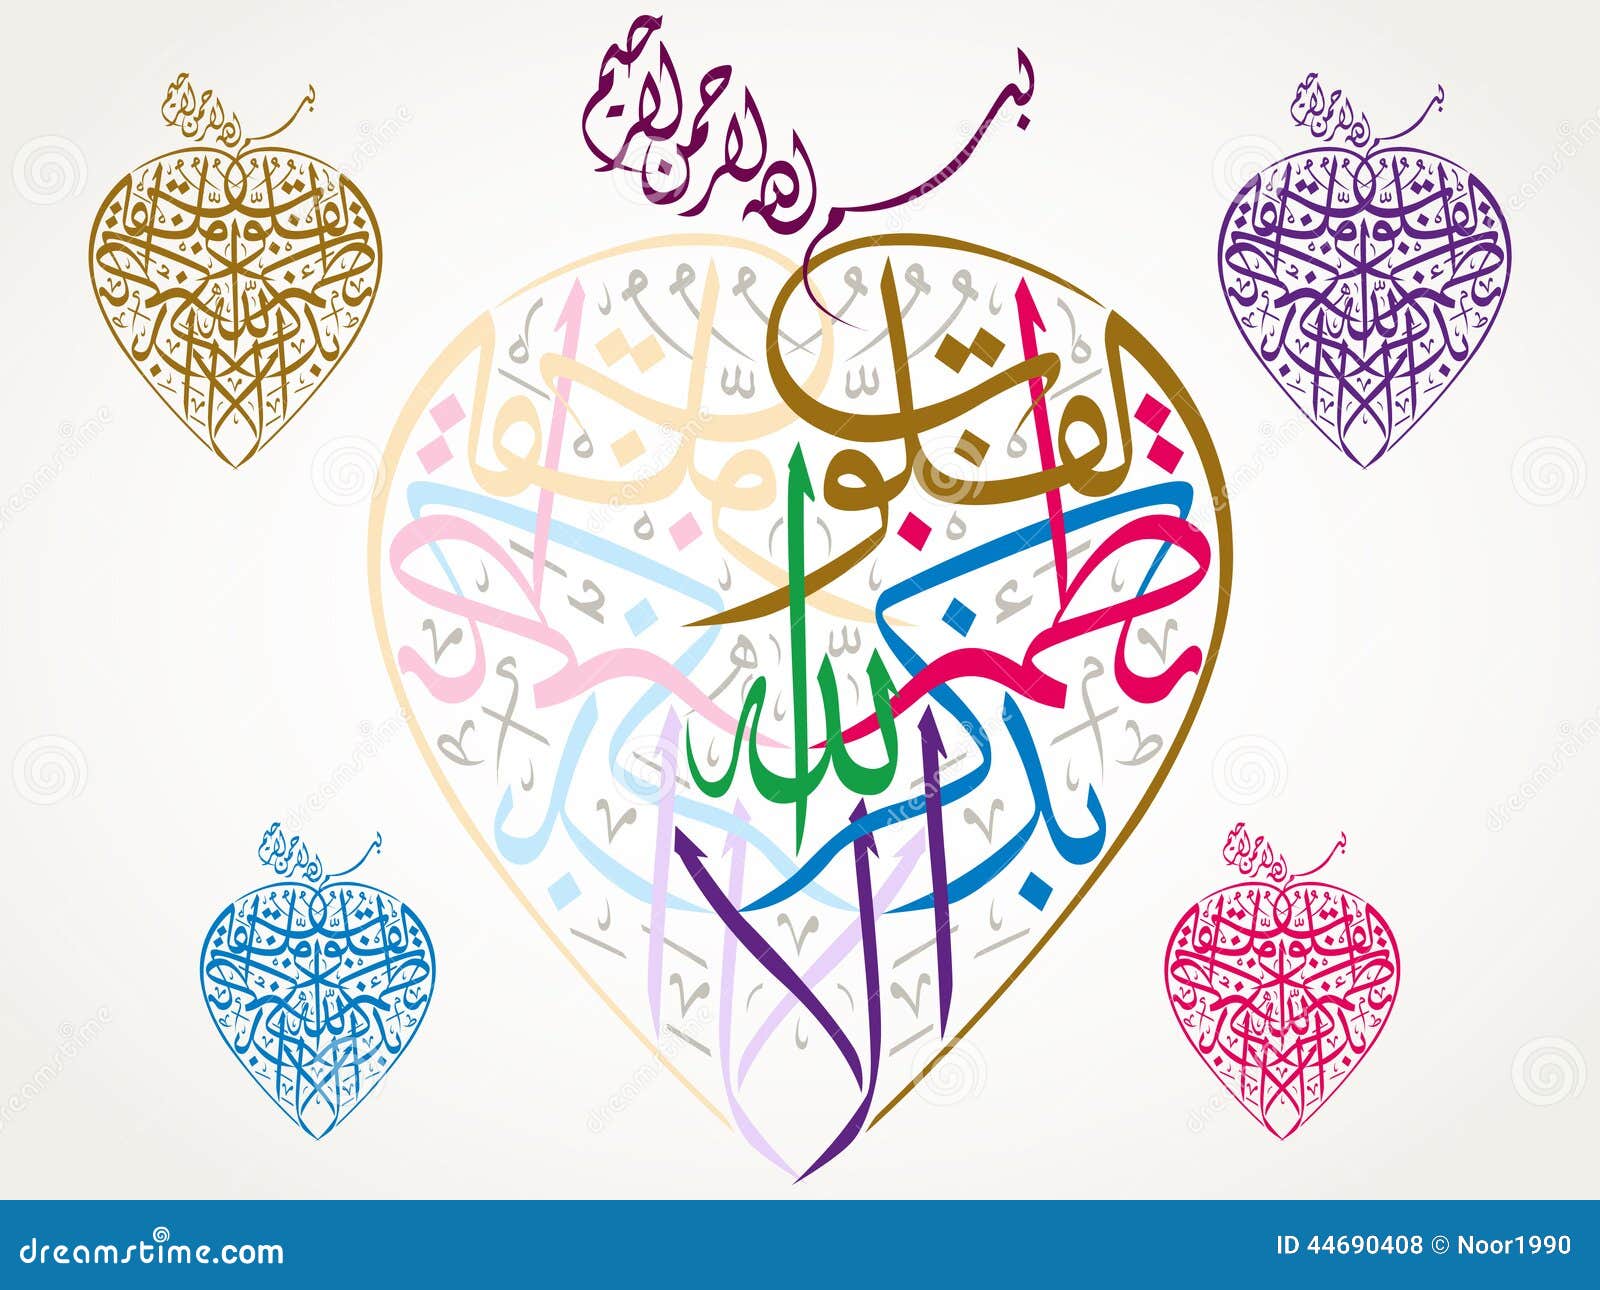 beautiful islamic calligraphy verse